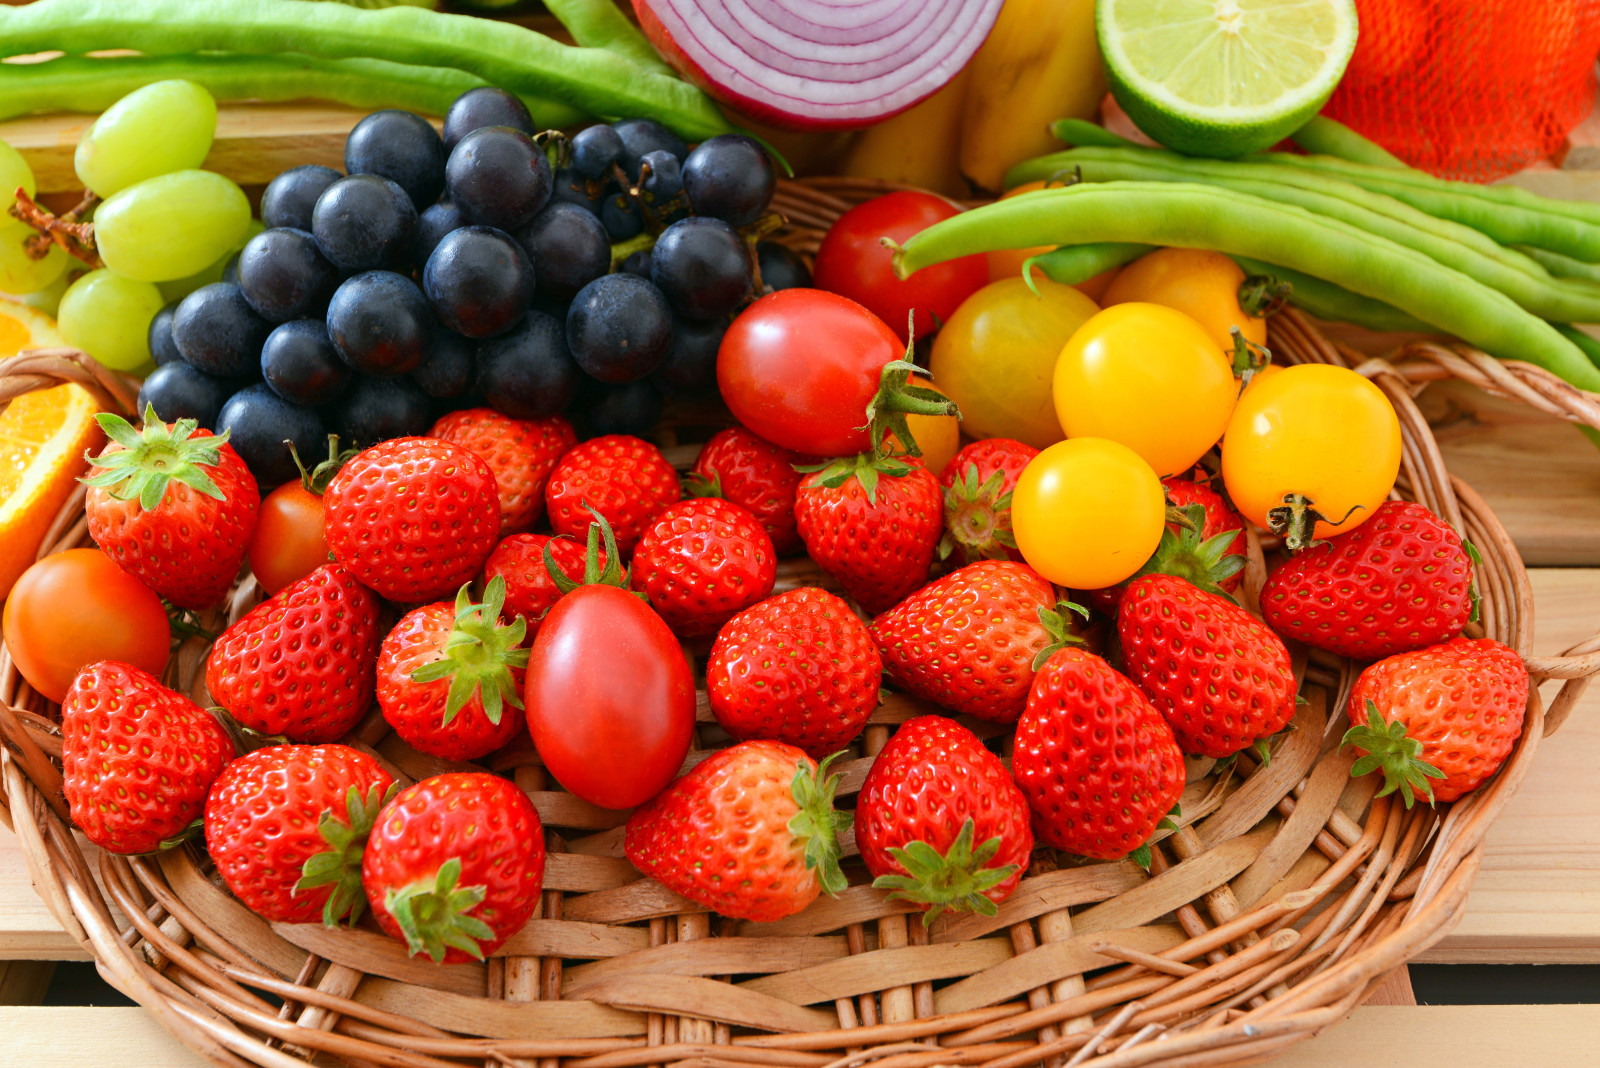 野菜, ベリー類, 新鮮な, フルーツ, 果物